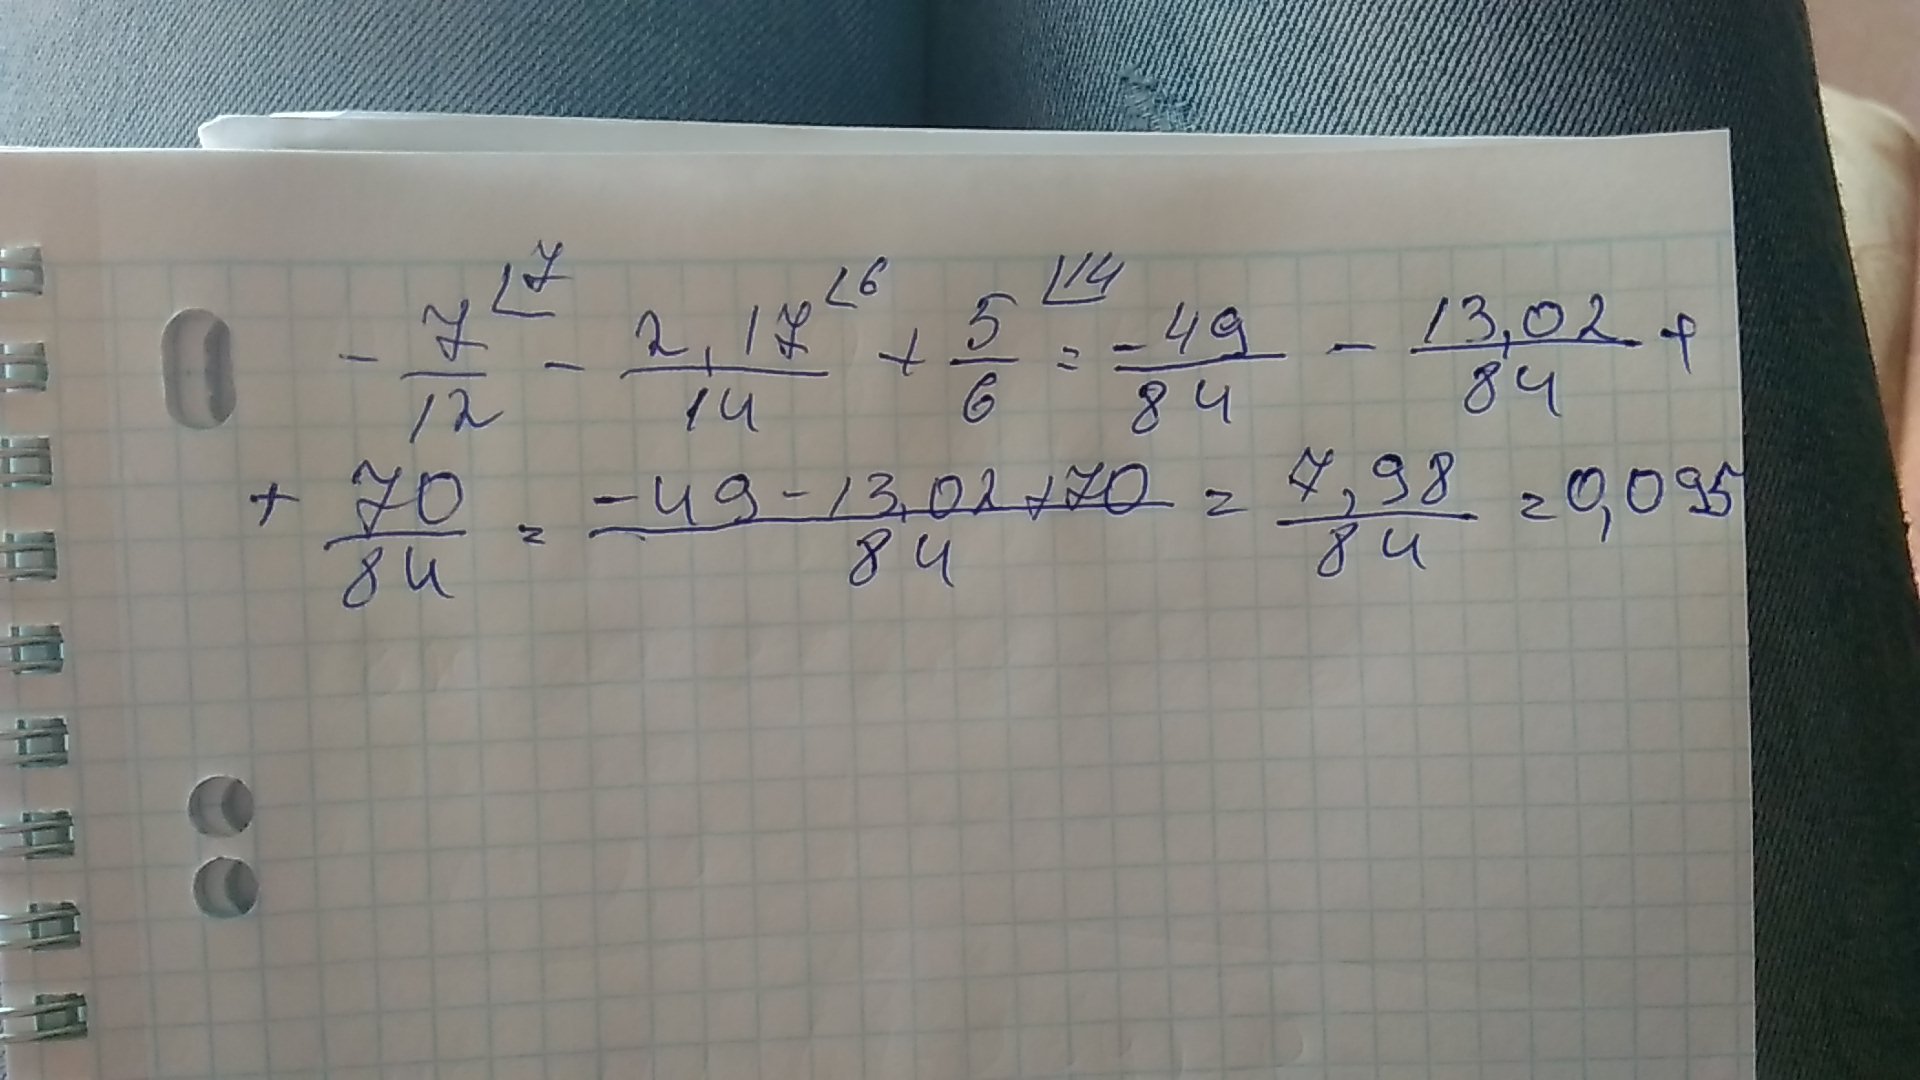 8 5 x 7 вычислить. Вычислите 7/12 8 6/17 + 1/8 /17/6. Вычисли 7 12. Вычислите 7.12-2.9. Вычислите 7.84²-12.16².